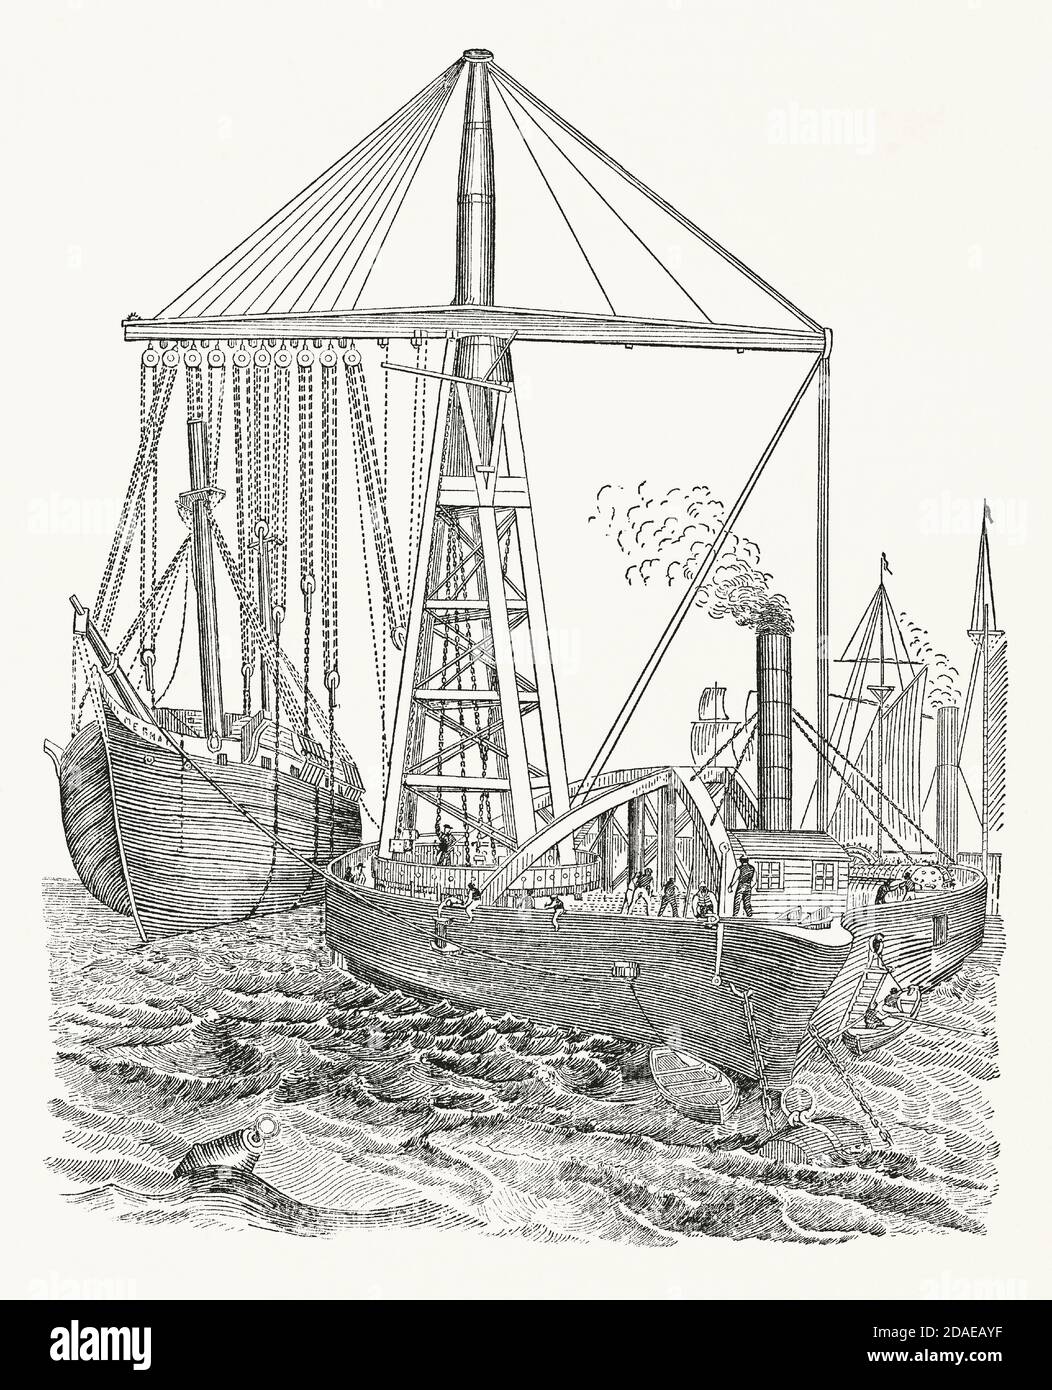 Une vieille gravure montrant le derrick flottant de Bishop c.1850. Il est issu d'un livre victorien d'ingénierie mécanique des années 1880. Dans cette illustration, le grand derrick à vapeur soulève un autre navire. C'était un bateau à fond plat, construit par la Thames Iron Shipbuilding Company de Blackwall, Londres, Angleterre, Royaume-Uni pour élever des navires en contrebas. Il avait une longueur de 270 pieds et une poutre de 90 pieds. Les compartiments étanches peuvent être remplis d'eau de mer pour compenser tout poids du côté opposé du bateau lors du levage. Les derricks montés sur des navires dédiés sont également appelés pieds de mouton. Banque D'Images